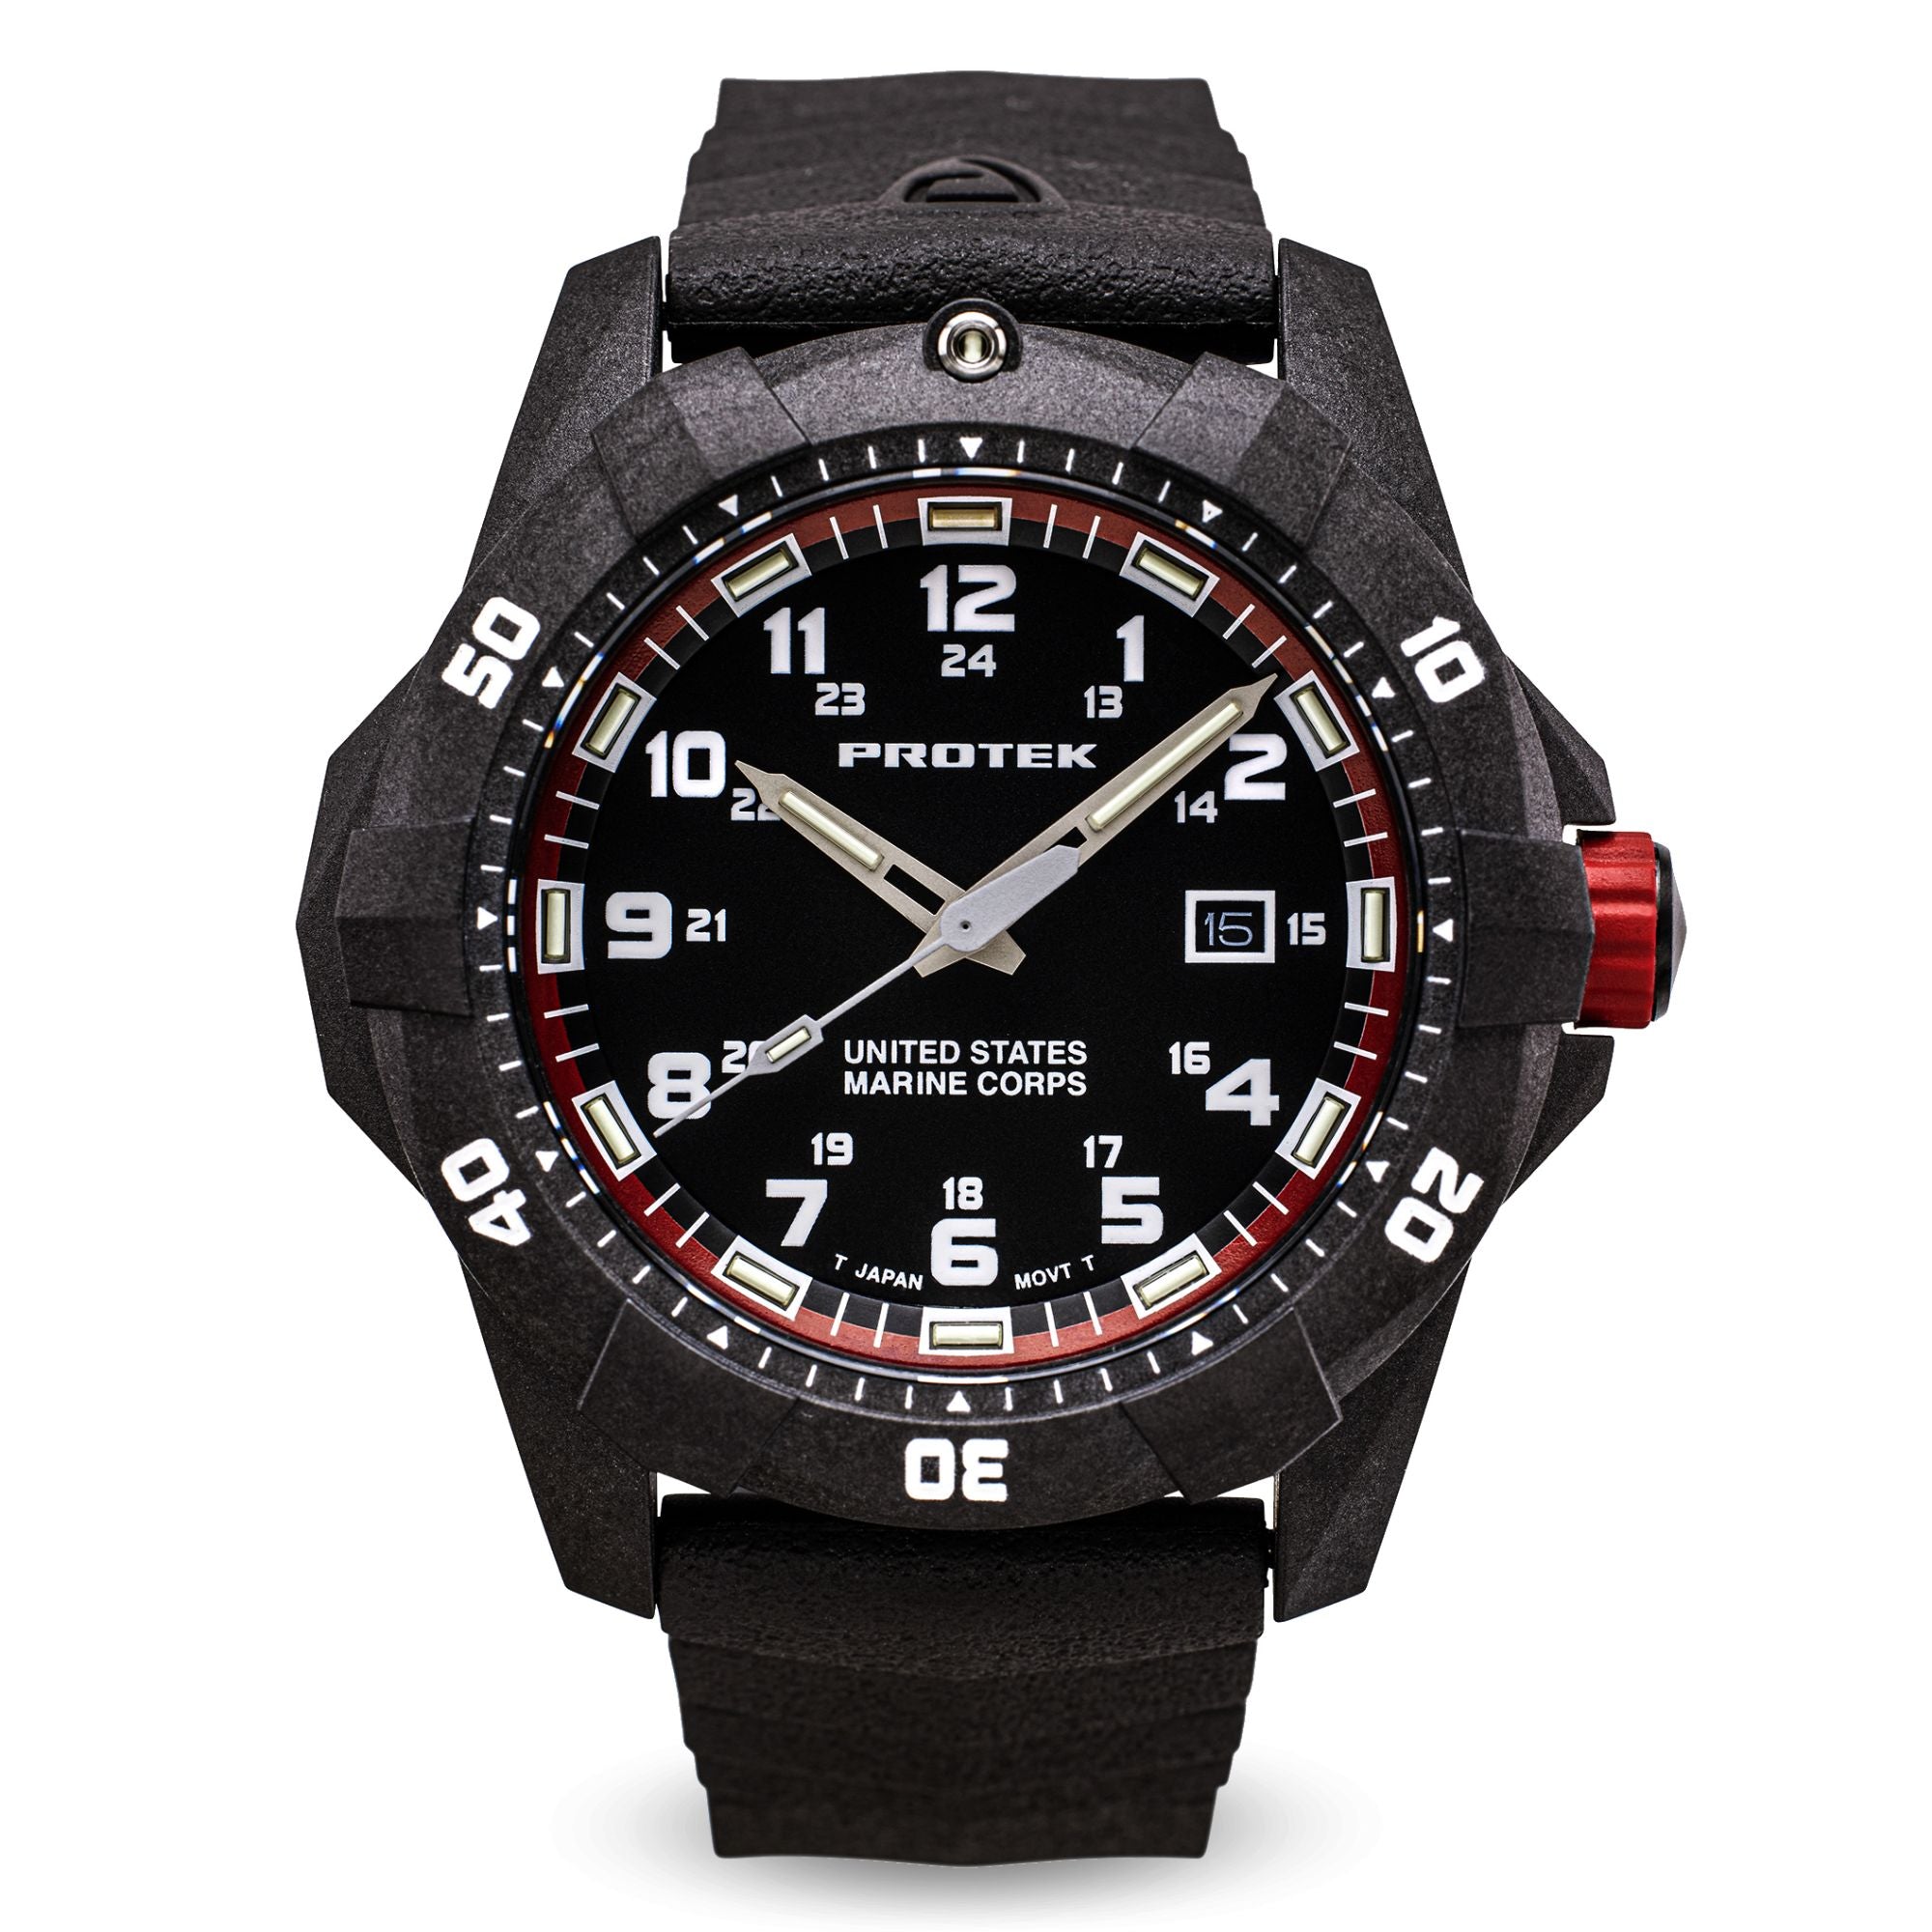 ProTek USMC Carbon Composite Dive Watch - Carbon/Black/Red (Black Band)